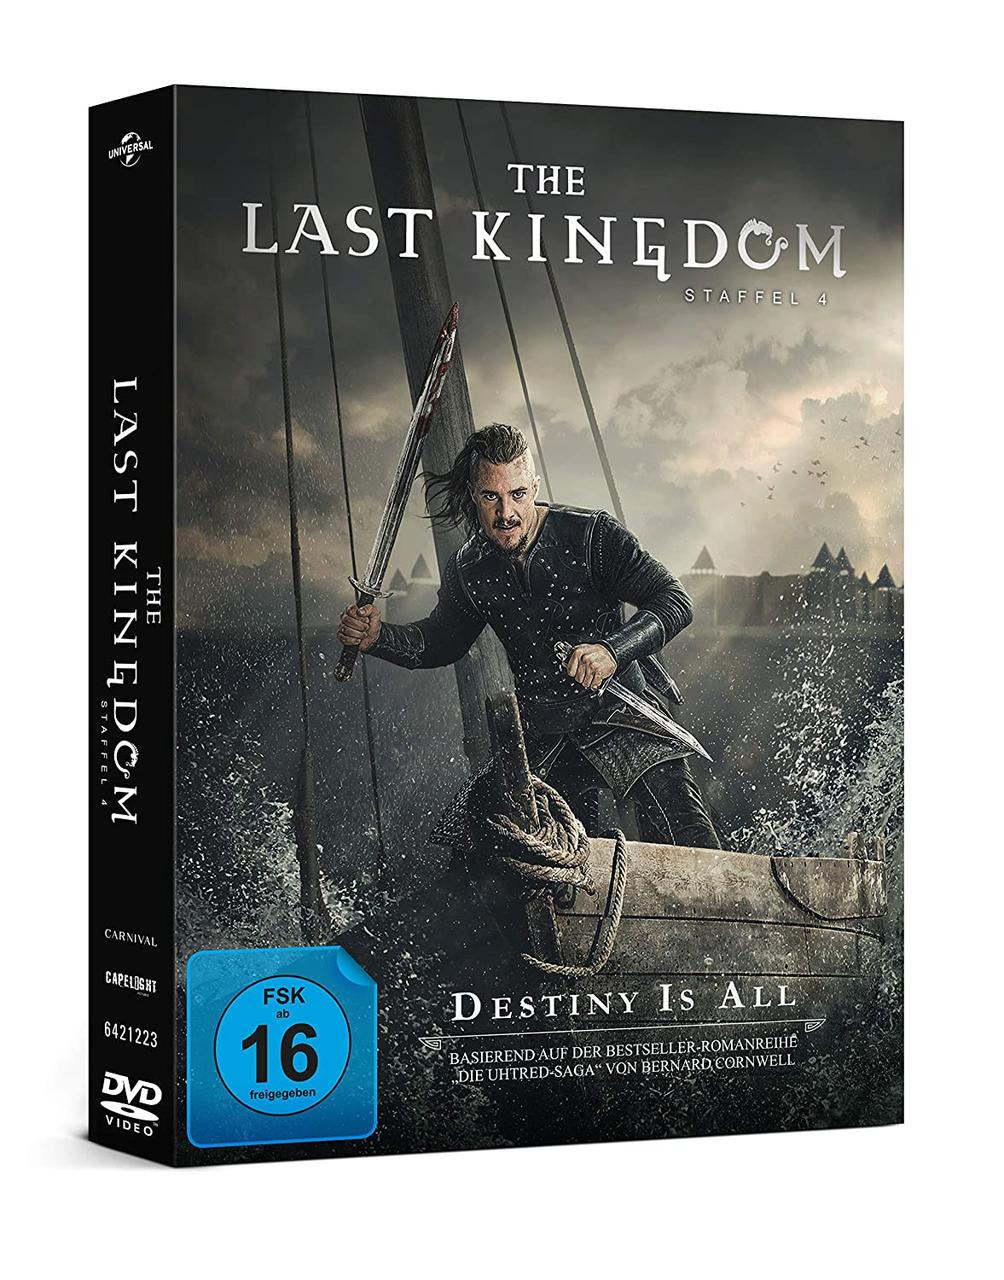 LAST 4.STAFFEL KINGDOM THE DVD